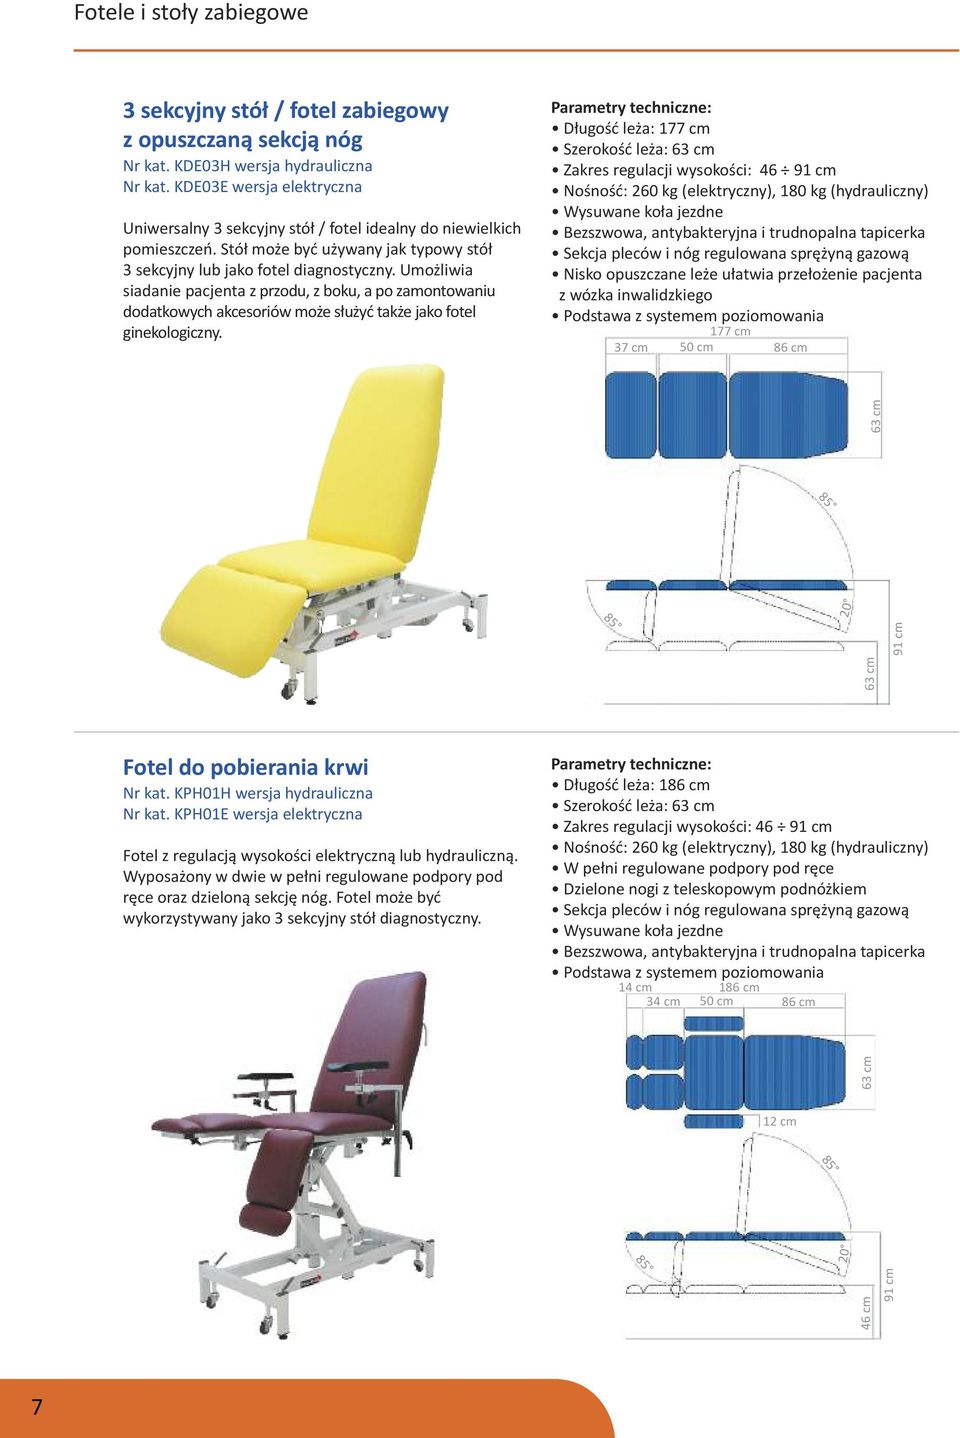 Umożliwia siadanie pacjenta z przodu, z boku, a po zamontowaniu dodatkowych akcesoriów może służyć także jako fotel ginekologiczny.